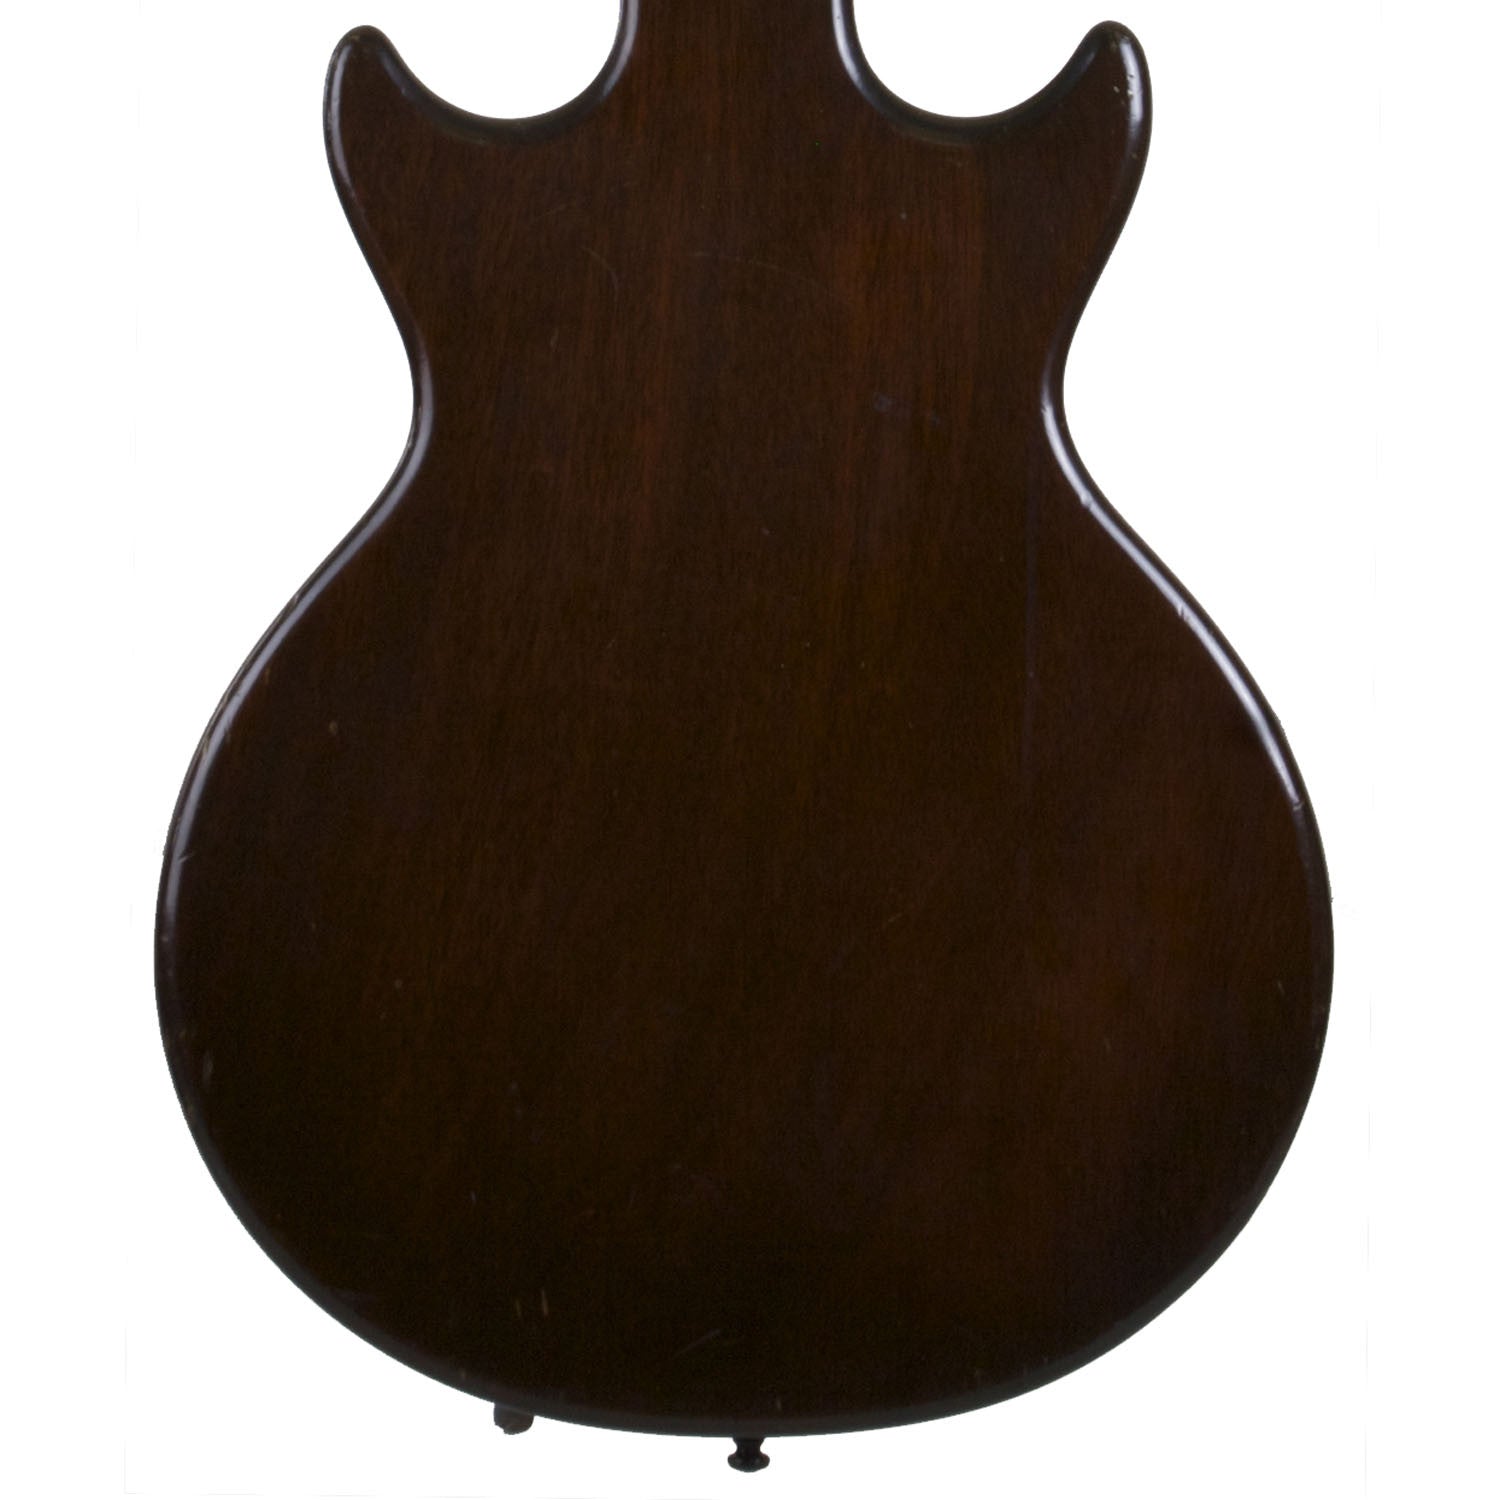 1962 Gibson Melody Maker - Garrett Park Guitars
 - 5